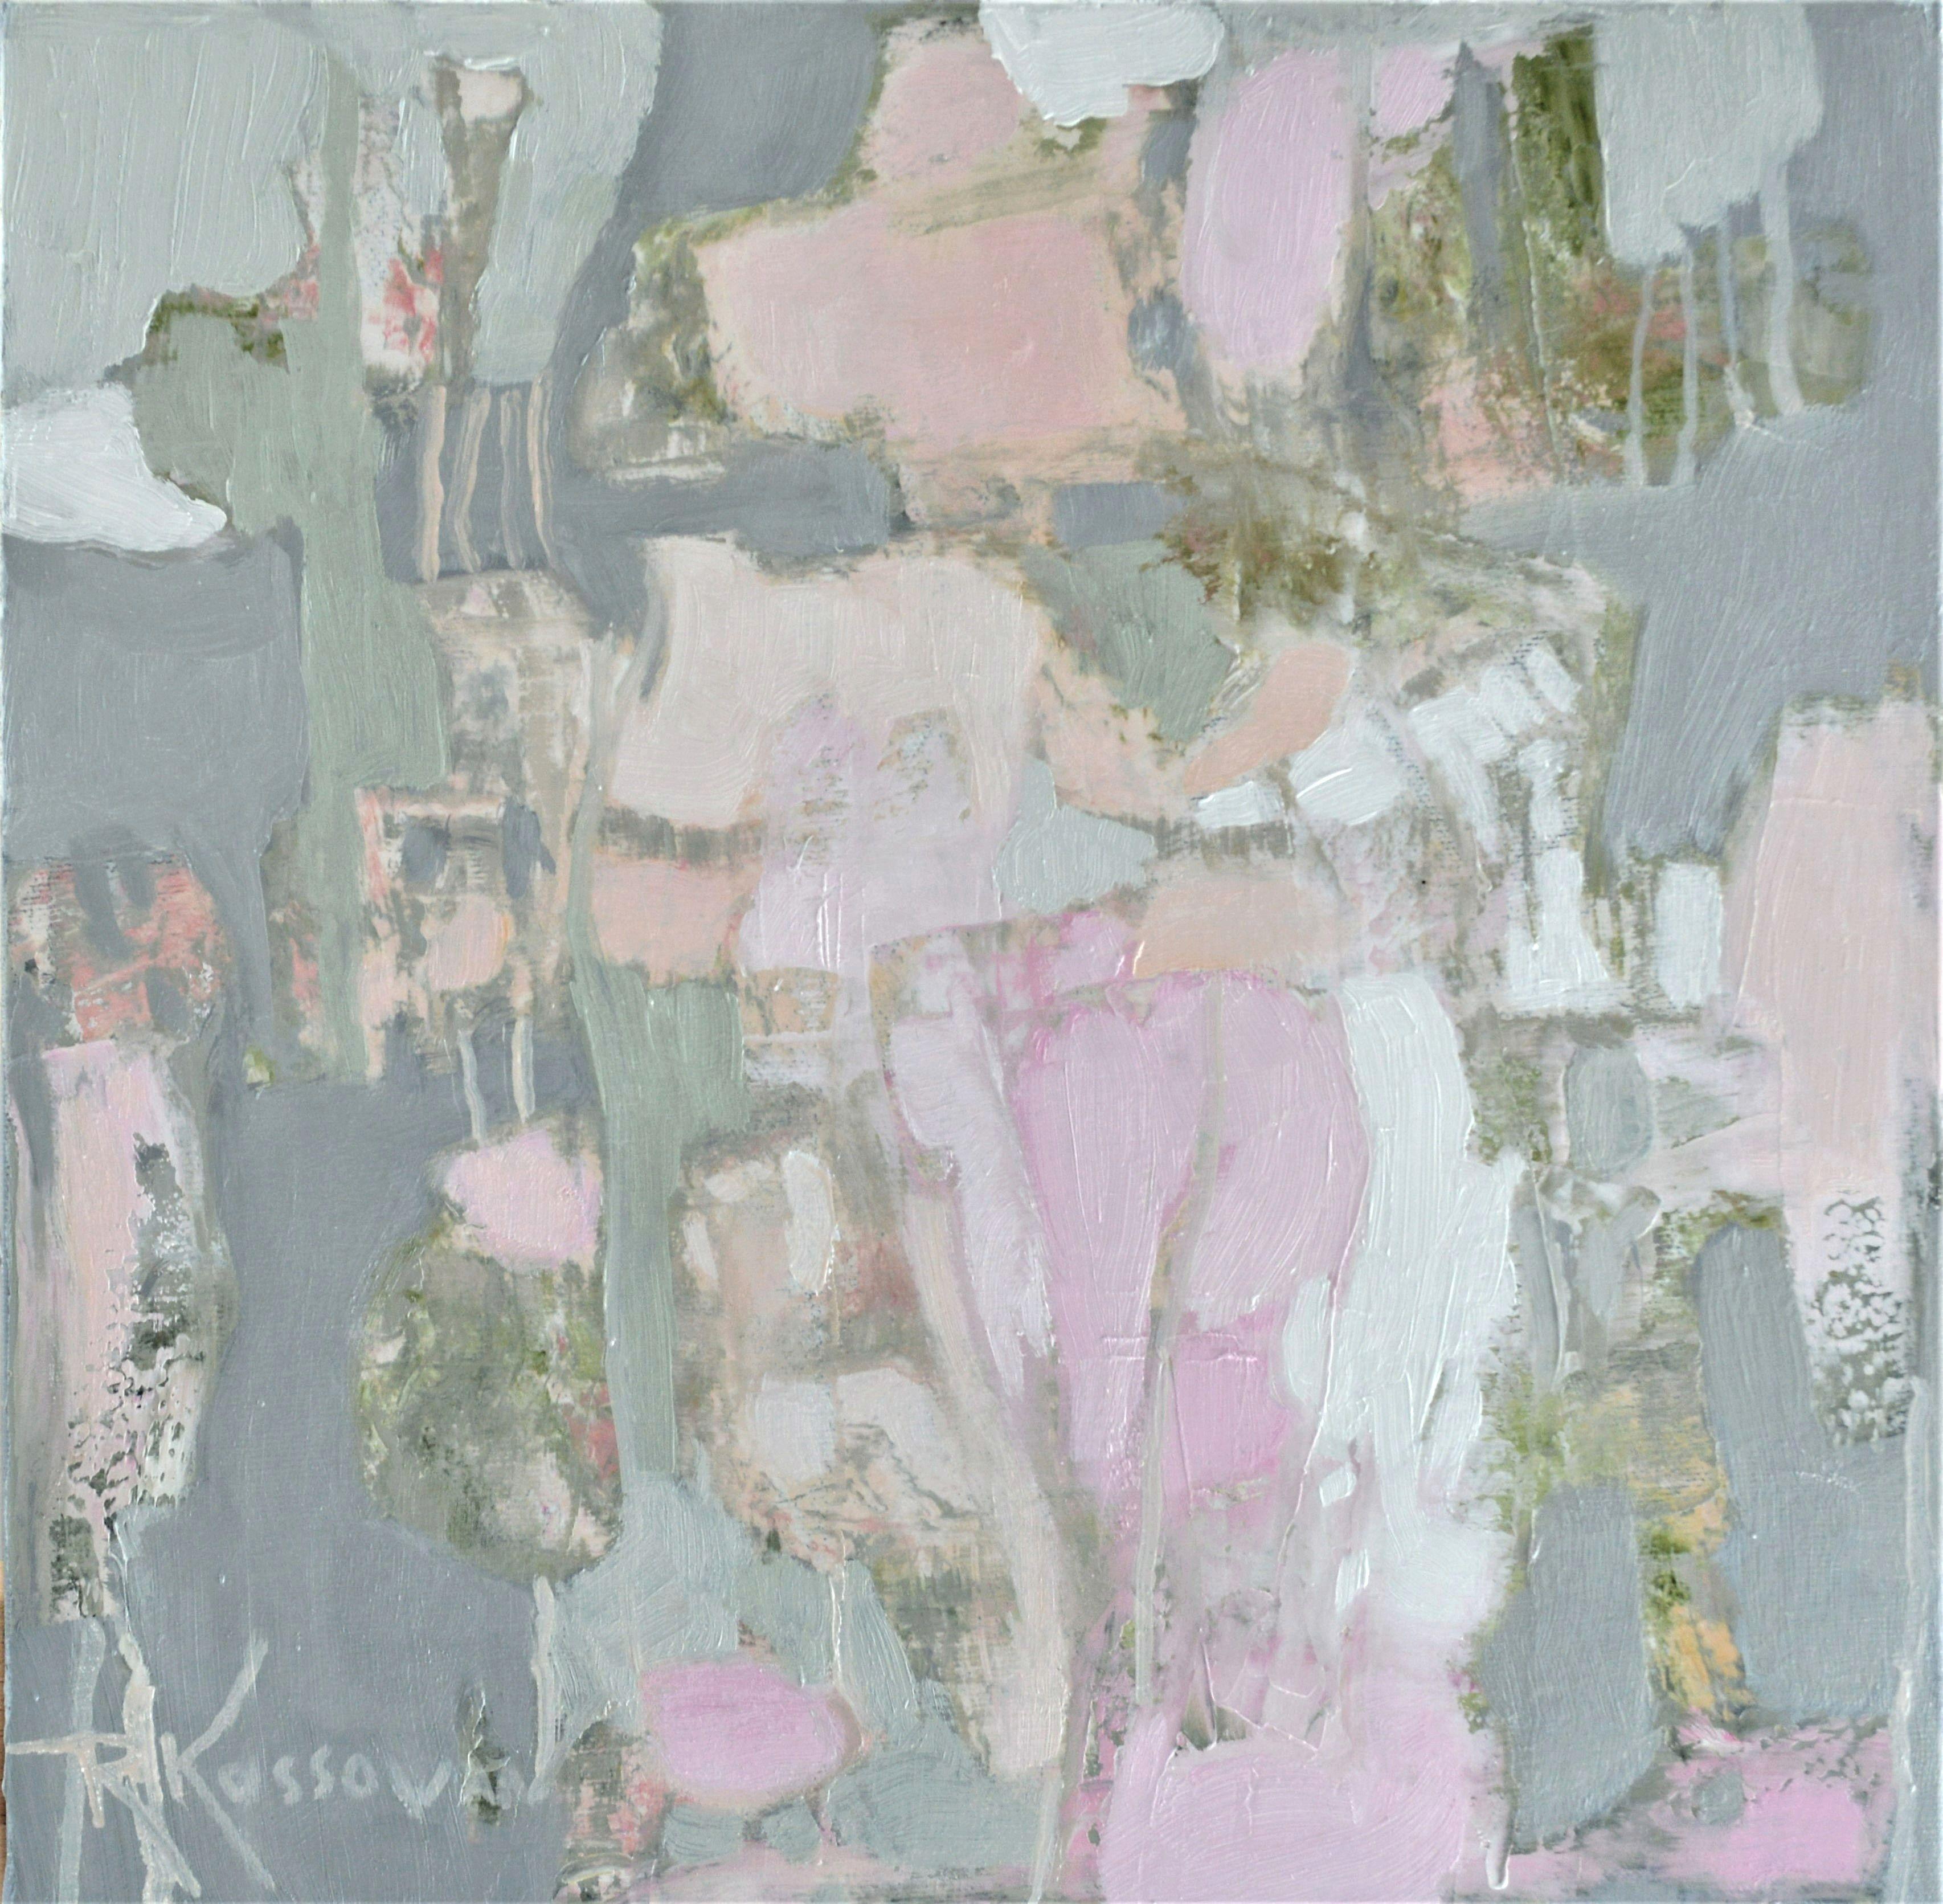 Abstract Painting Rose-Marie Kossowan - Placidité, peinture, huile sur toile